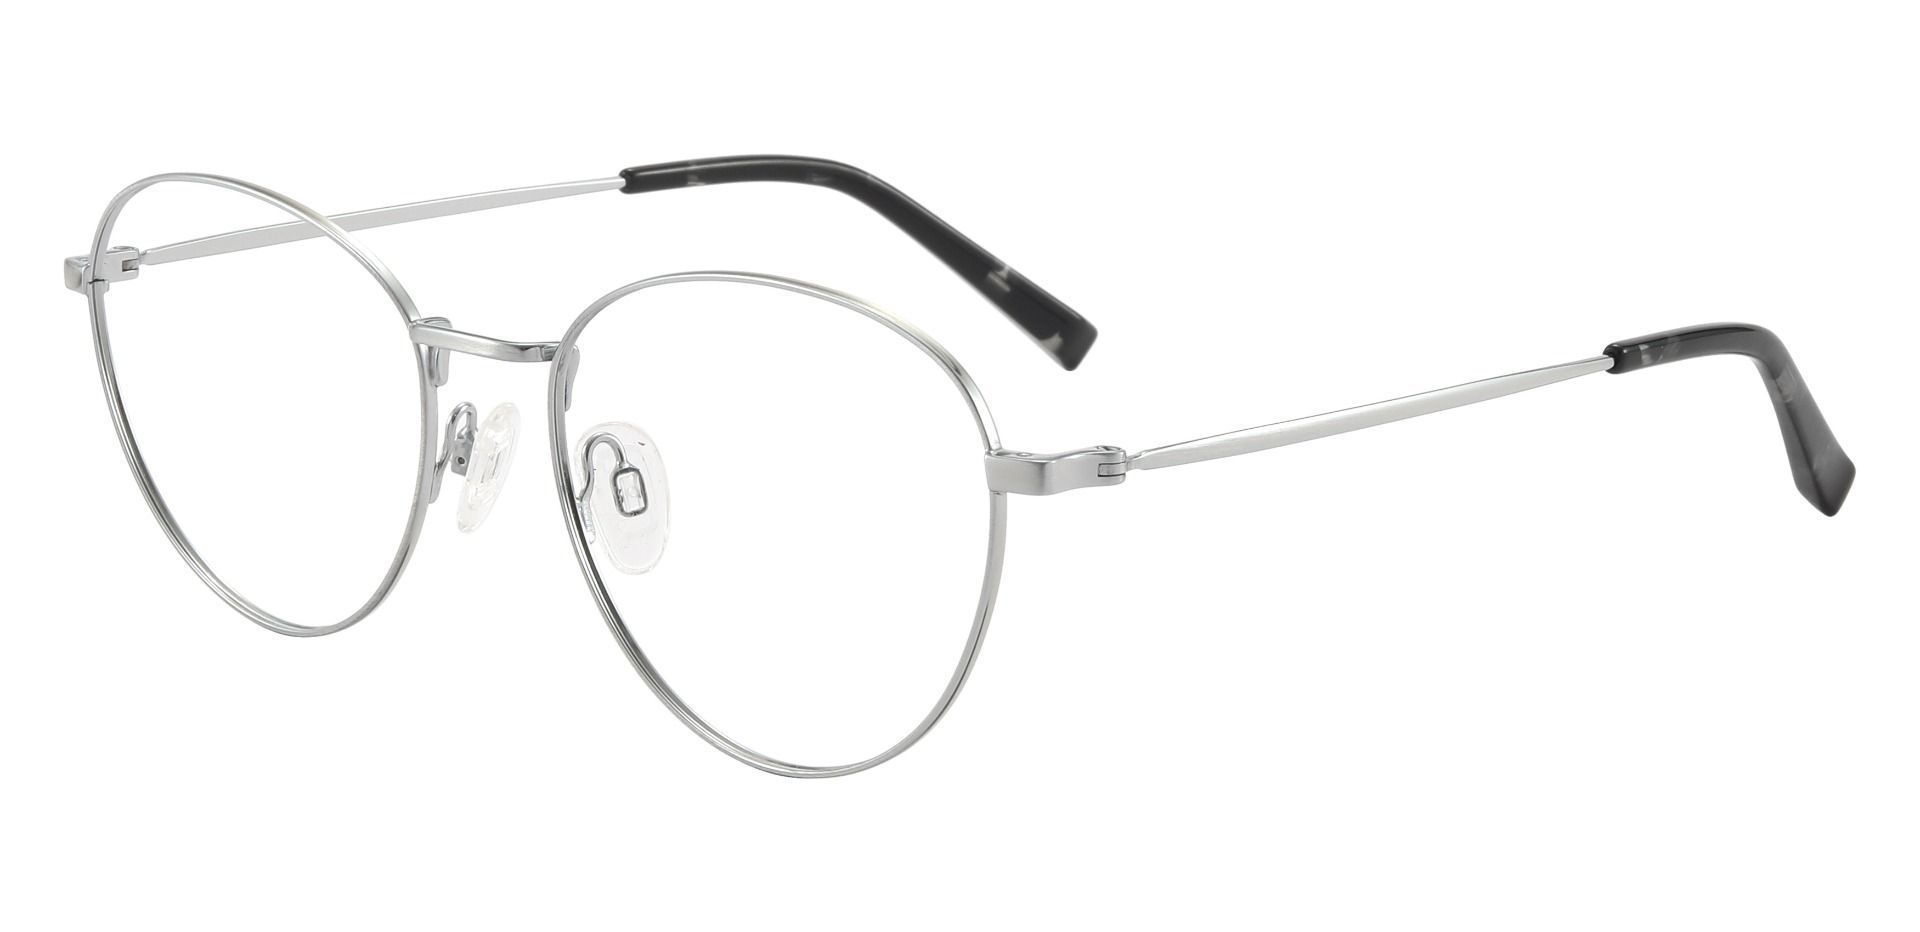 Elmira Oval Prescription Glasses - Silver